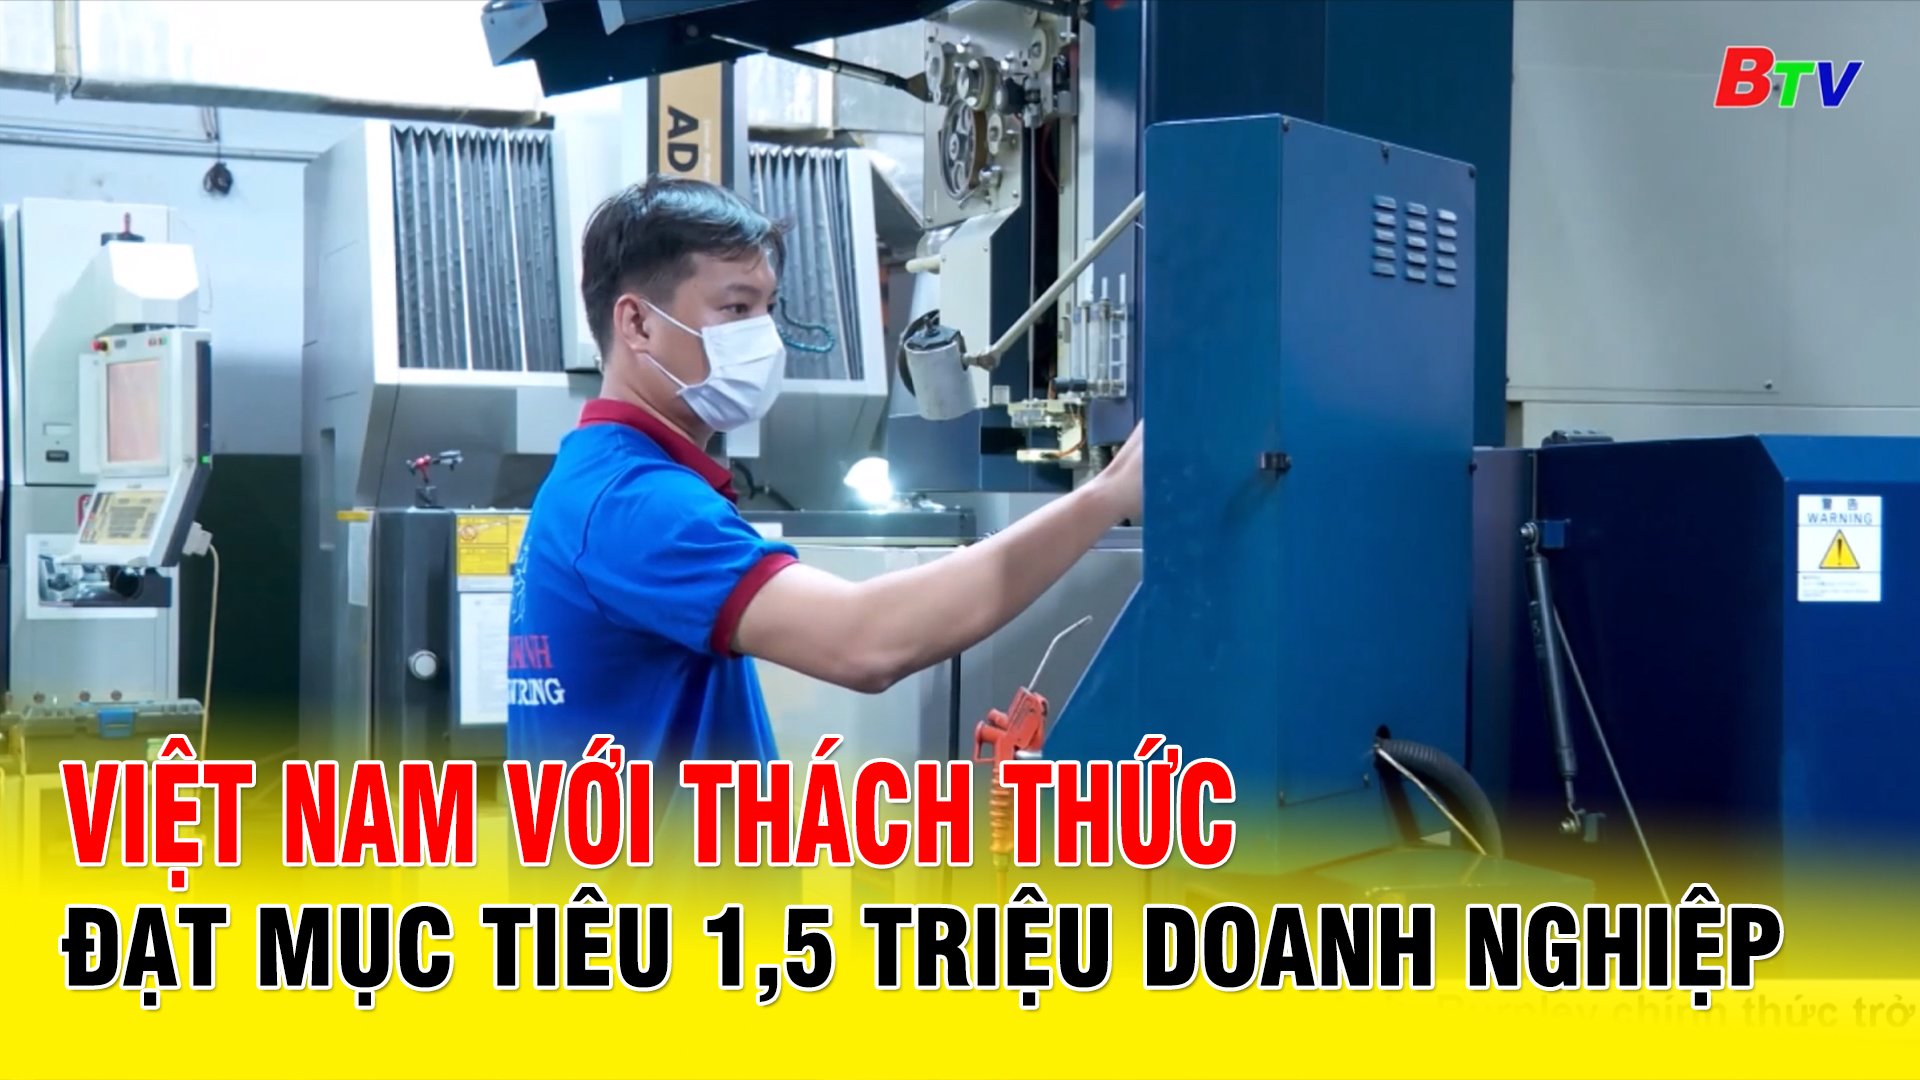 Việt Nam với thách thức đạt mục tiêu 1,5 triệu doanh nghiệp